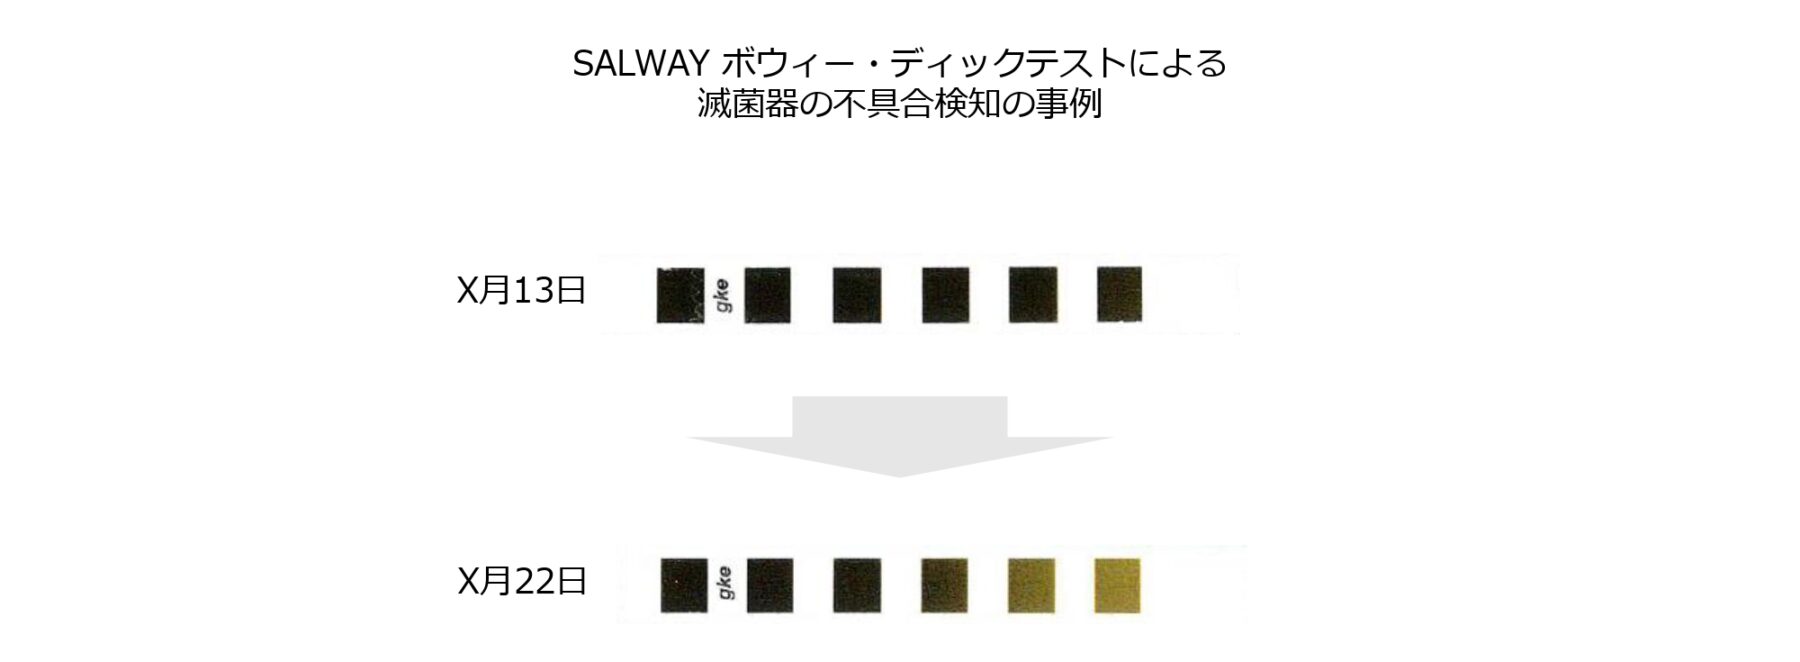 SALWAYボウィー・ディックテストによる滅菌器の不具合検知の事例